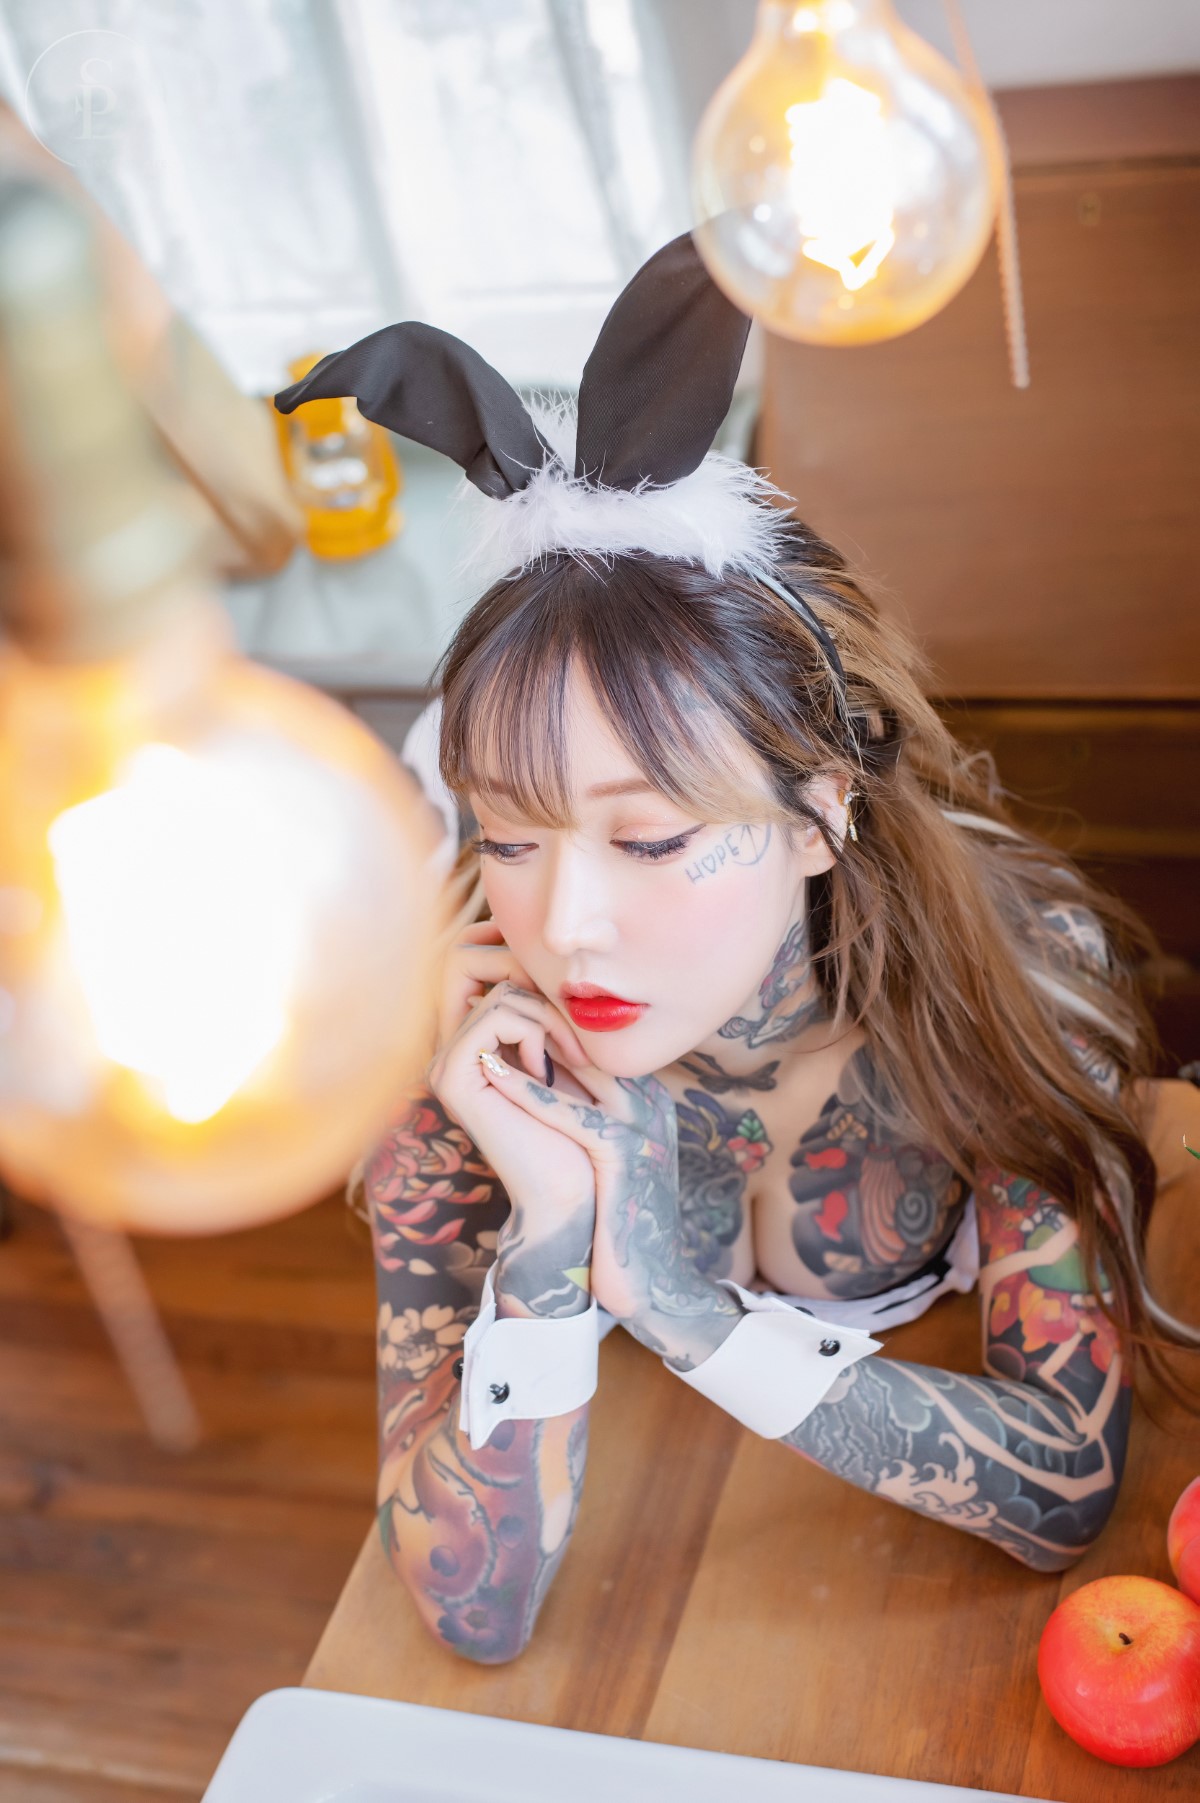 SaintPhotolife Vol 002 YoKo Bunny Girl 0015 0805329681.jpg